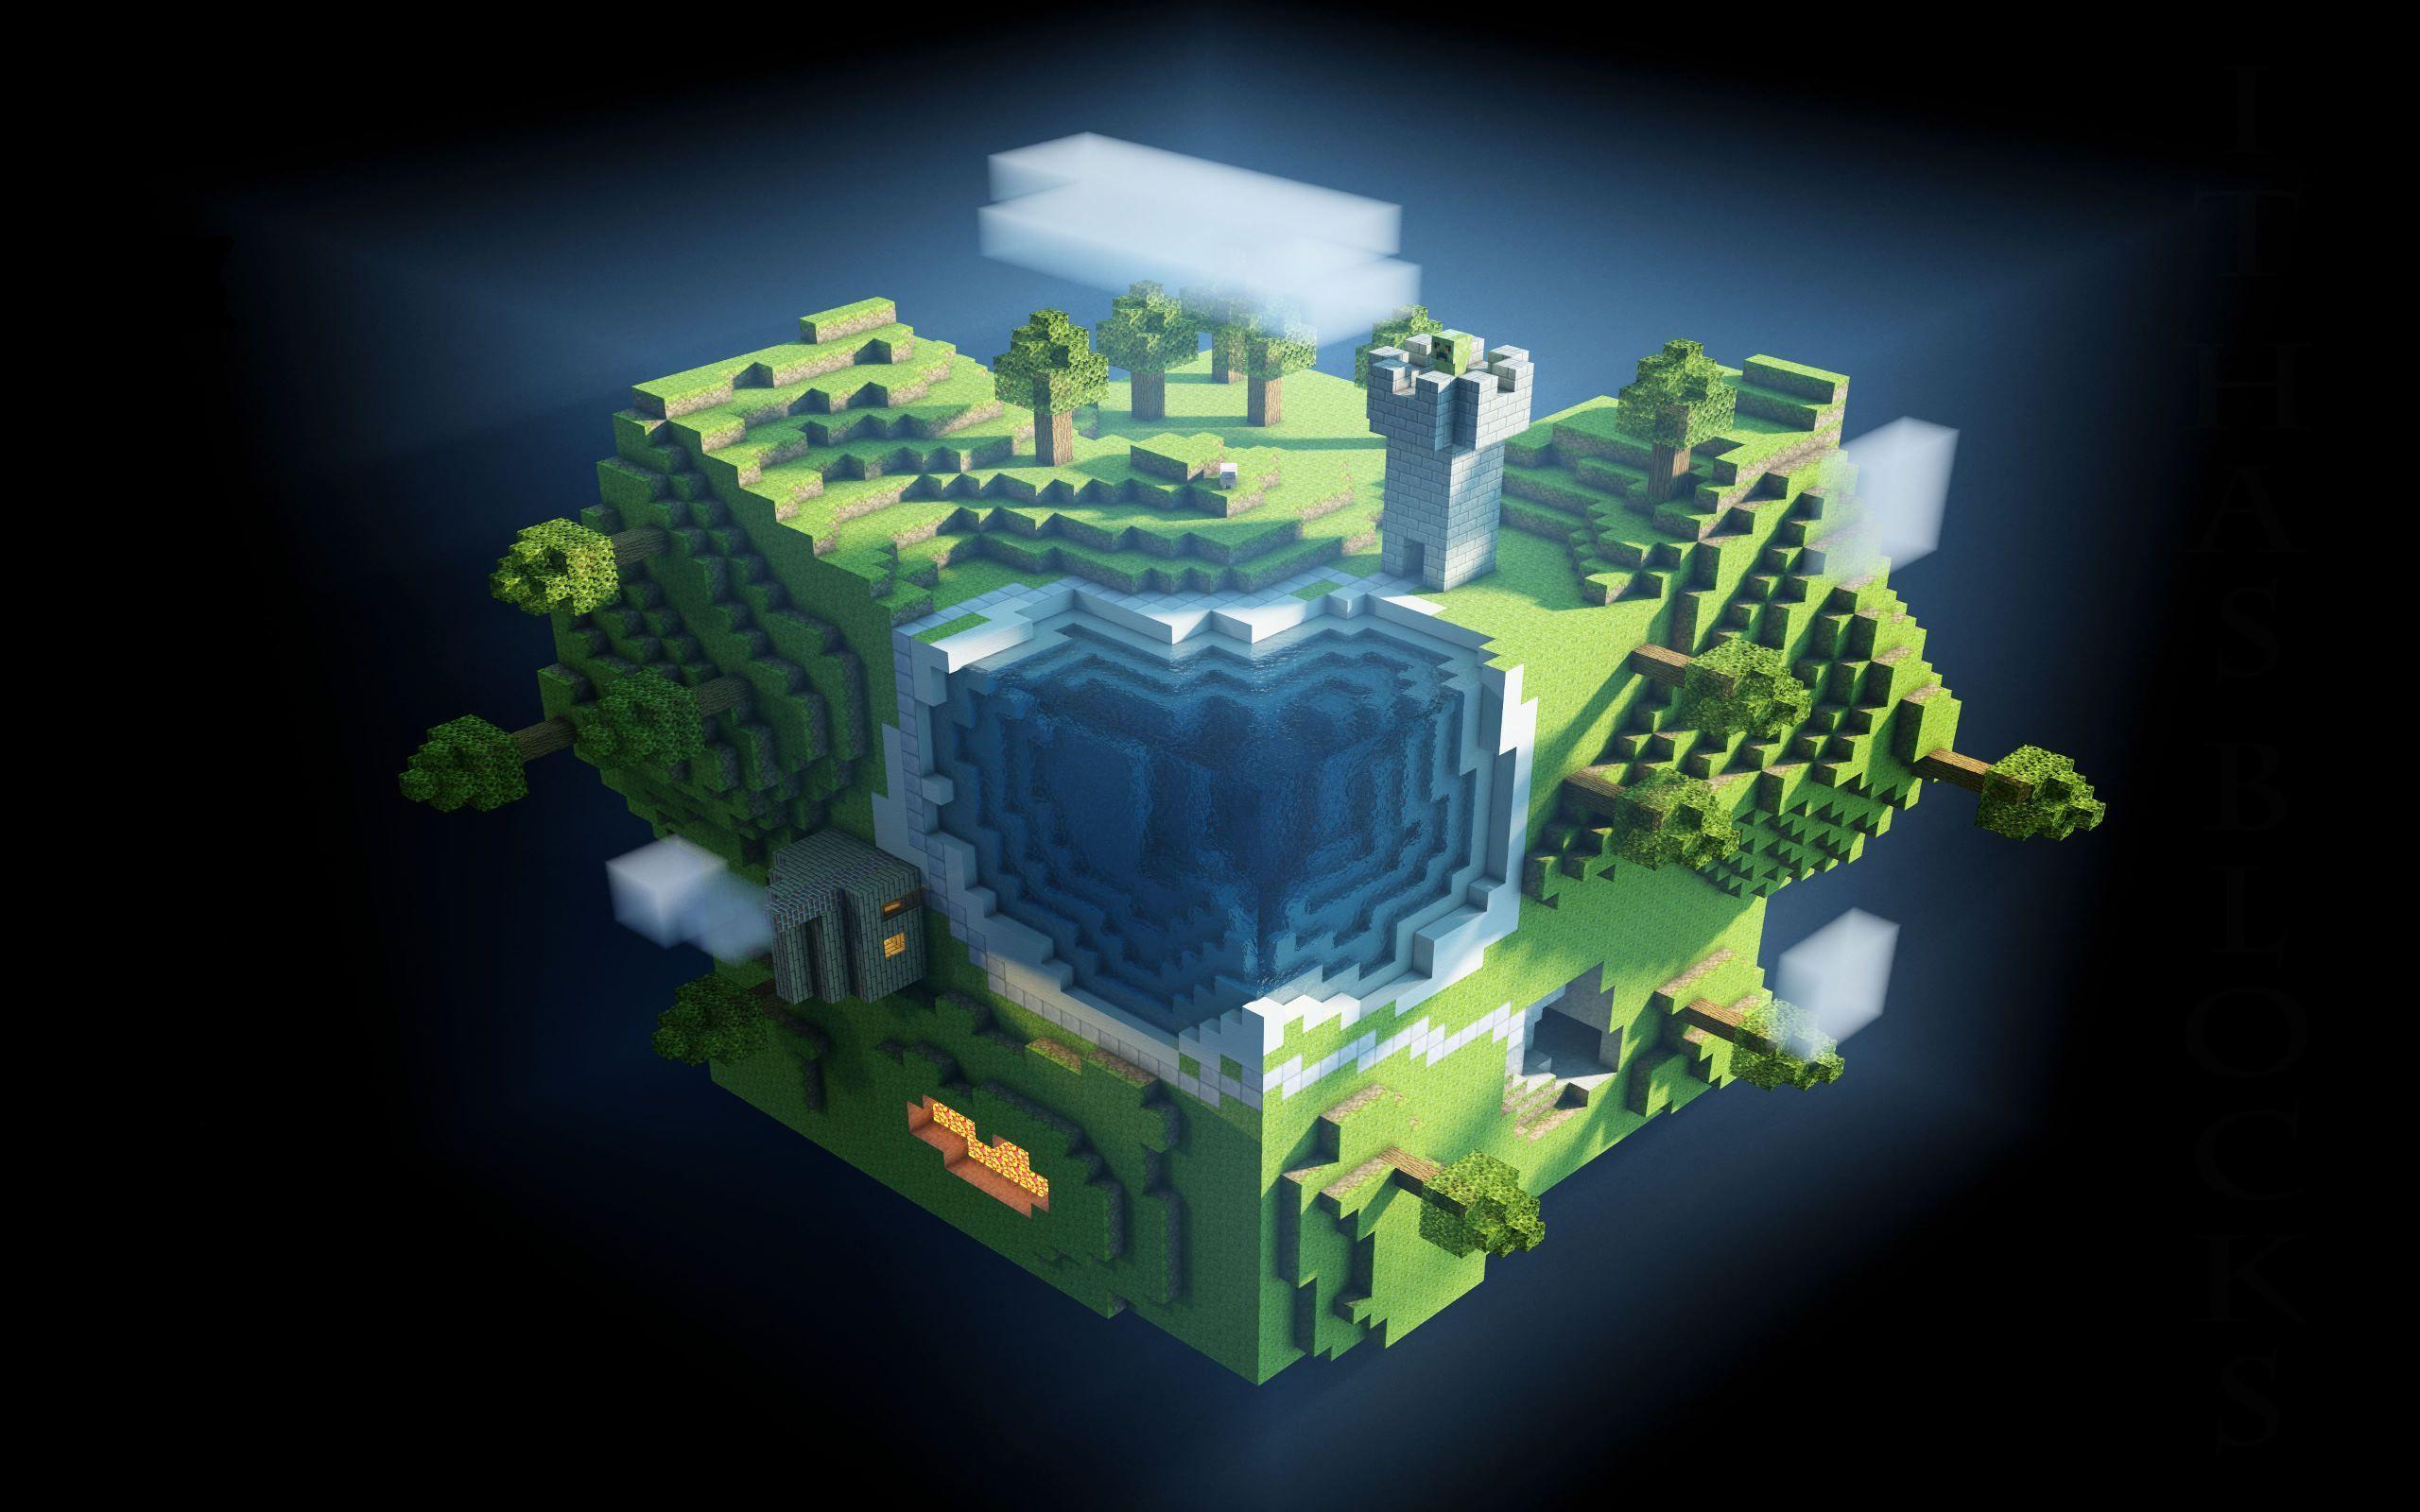 Best Minecraft Wallpapers: Nếu bạn đang tìm kiếm những bức hình nền Minecraft đẹp nhất, hãy tham khảo ngay bộ sưu tập Best Minecraft Wallpapers. Đây là những bức ảnh được chọn lọc và chỉnh sửa kỹ lưỡng, mang lại trải nghiệm thưởng thức tối đa cho người xem.